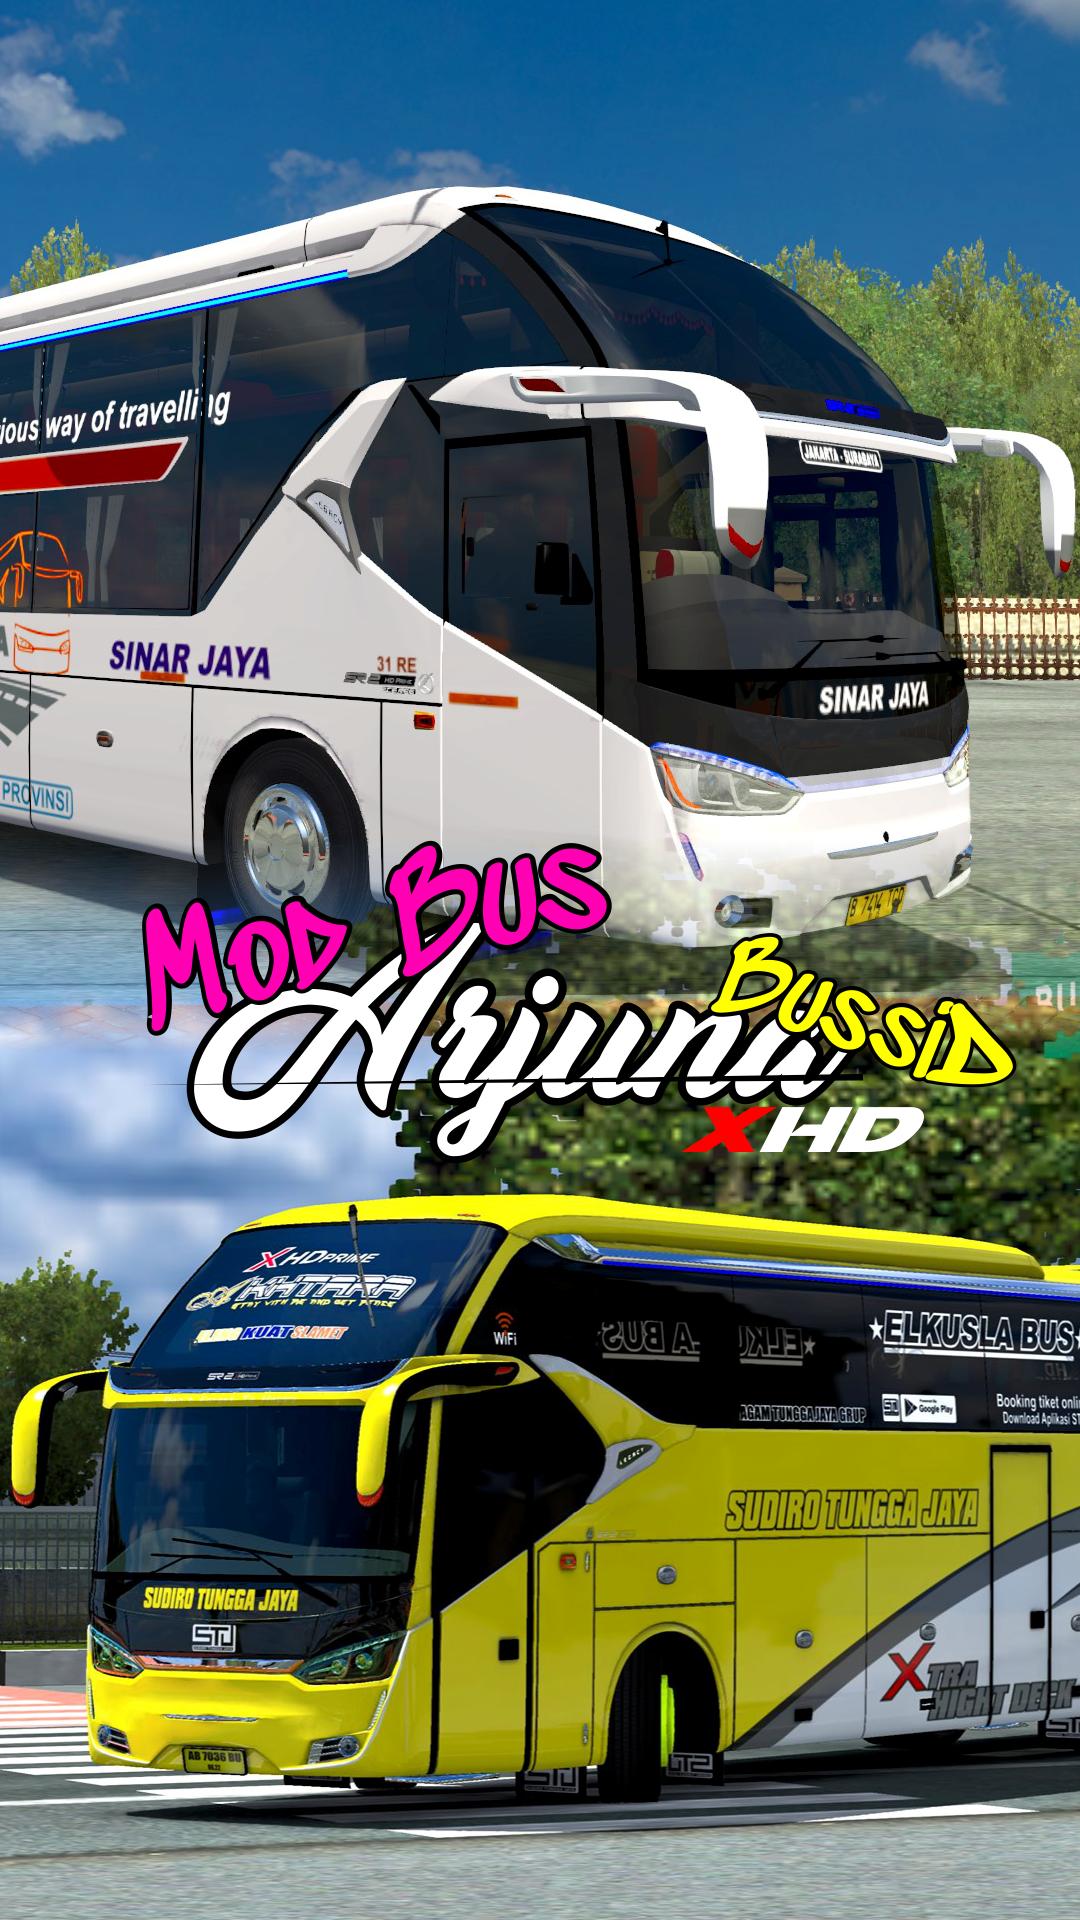  Arjuna  Xhd  Bus  Bus  Simulator Indonesia Bus  Skin Download 